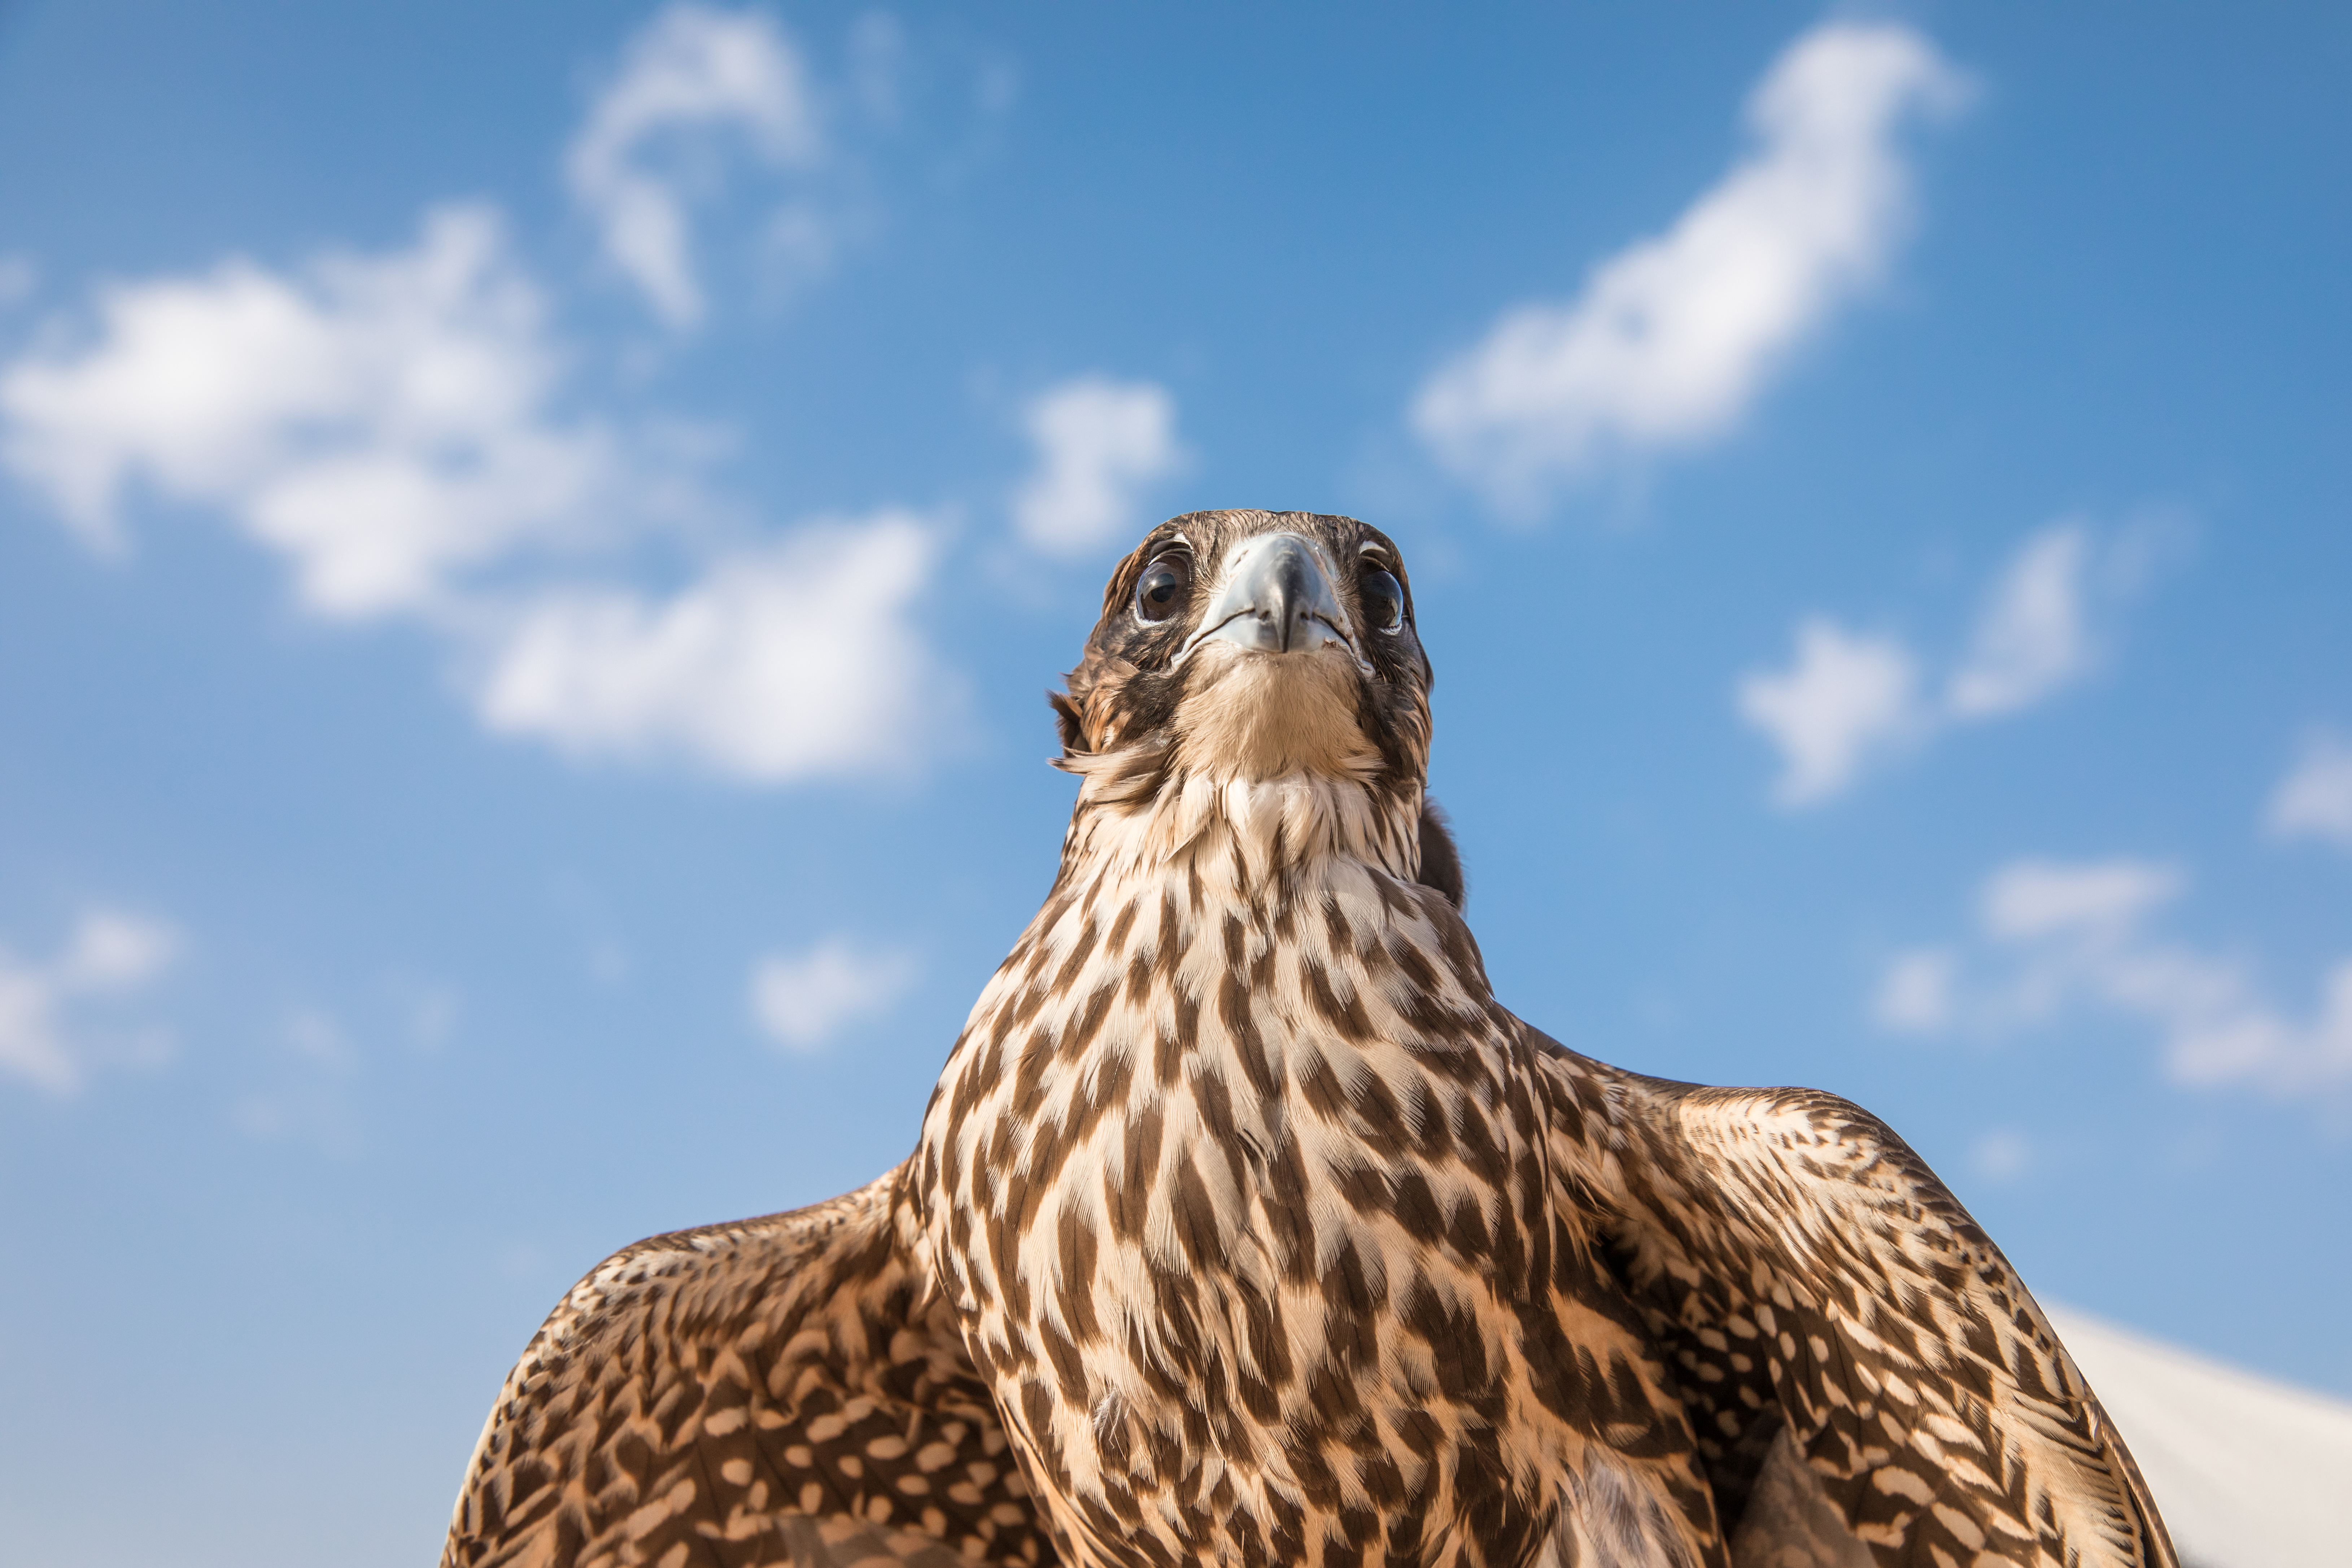 The Saker Falcon